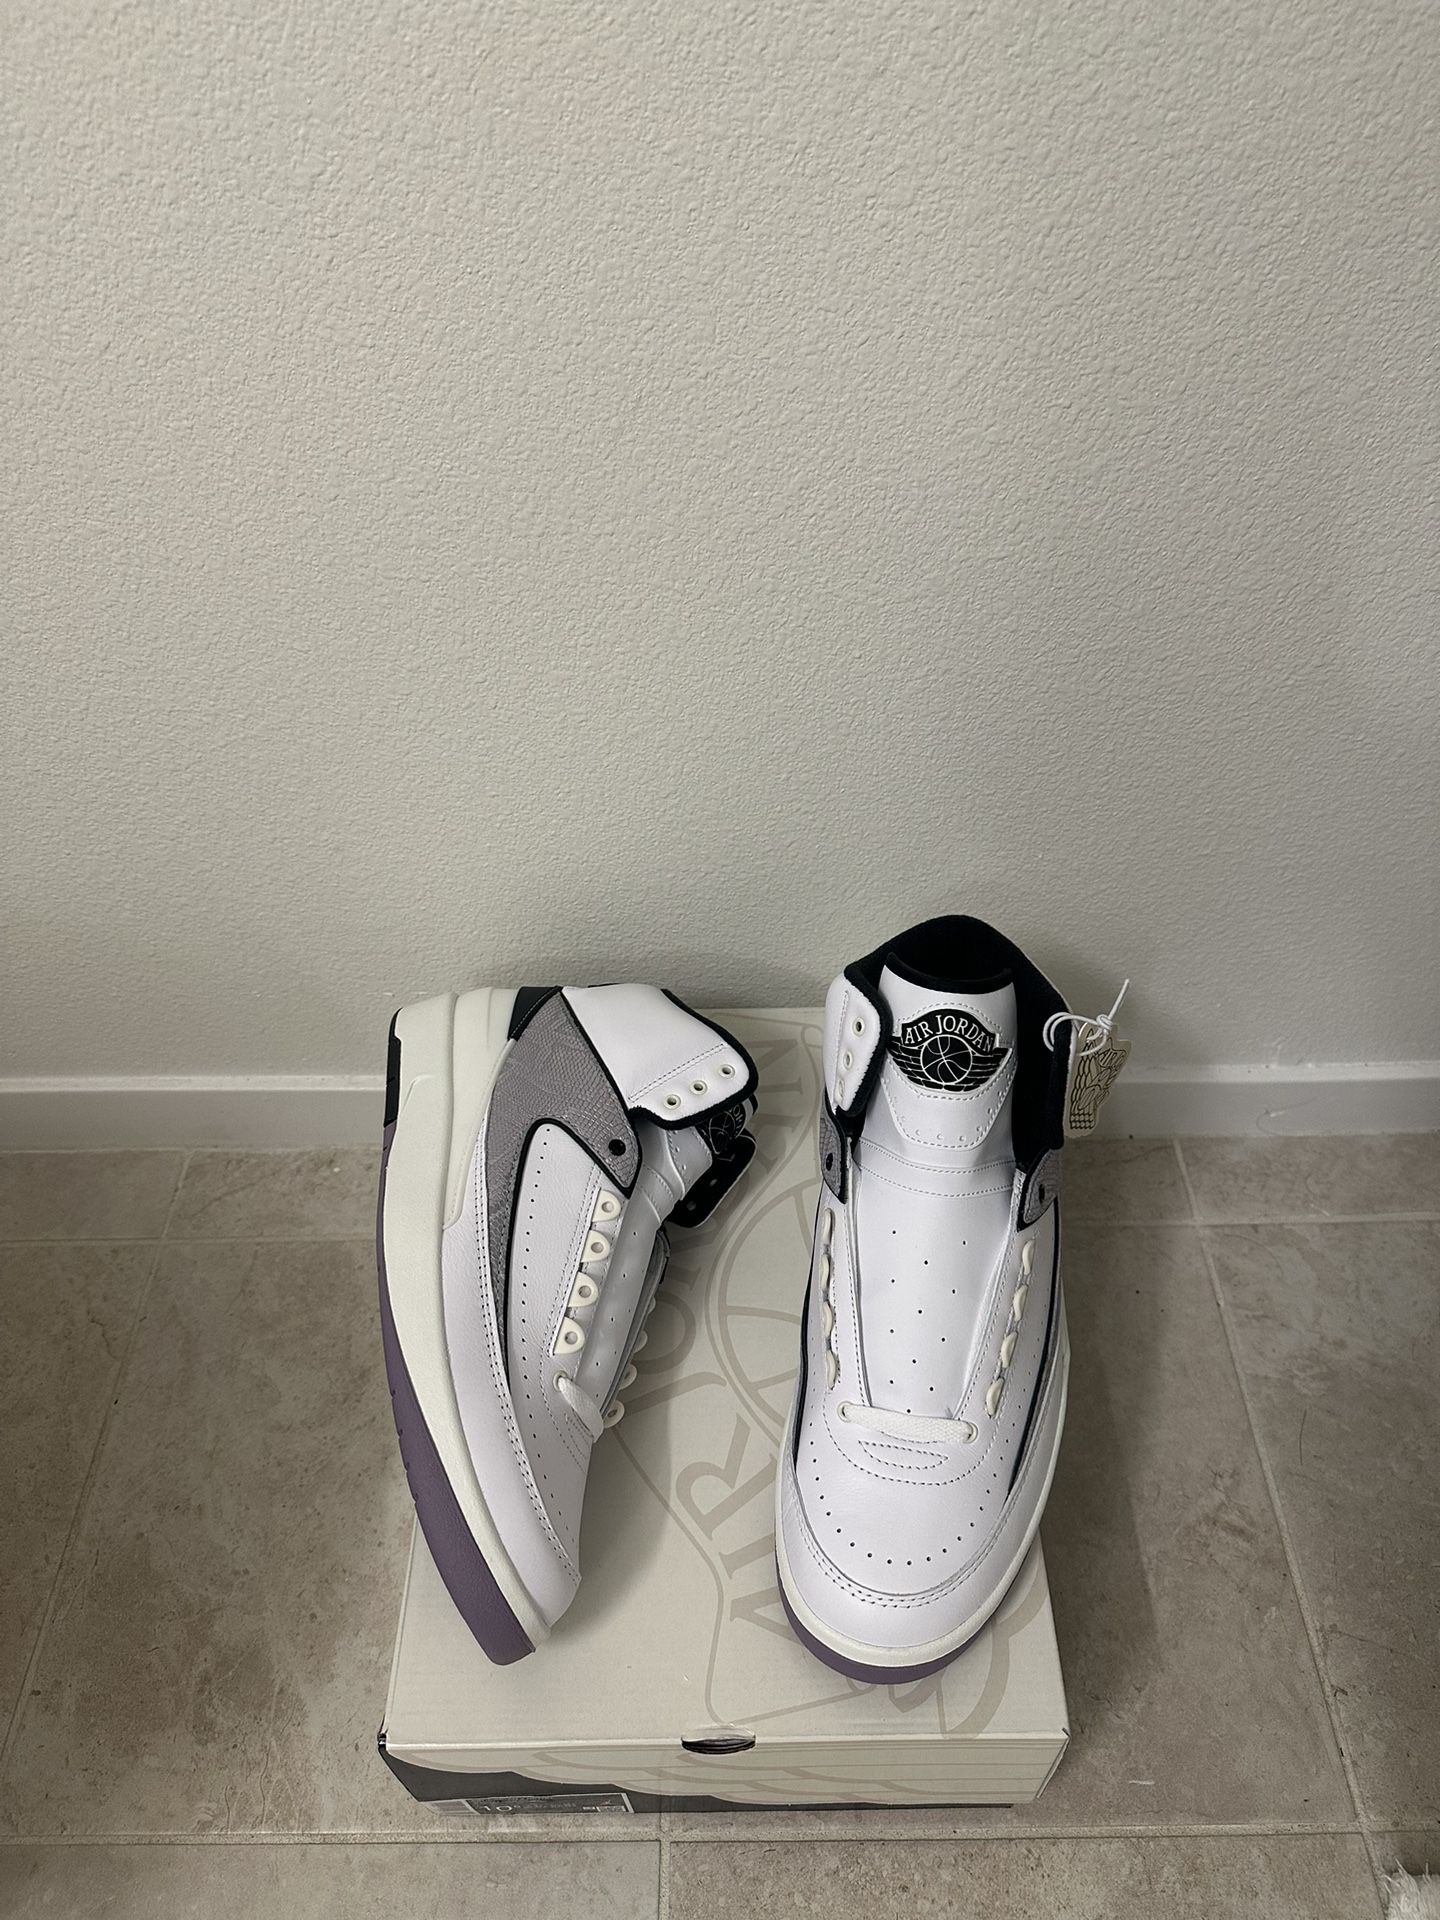 Air Jordan 2 Retro  Men’s Shoes Size 10.5